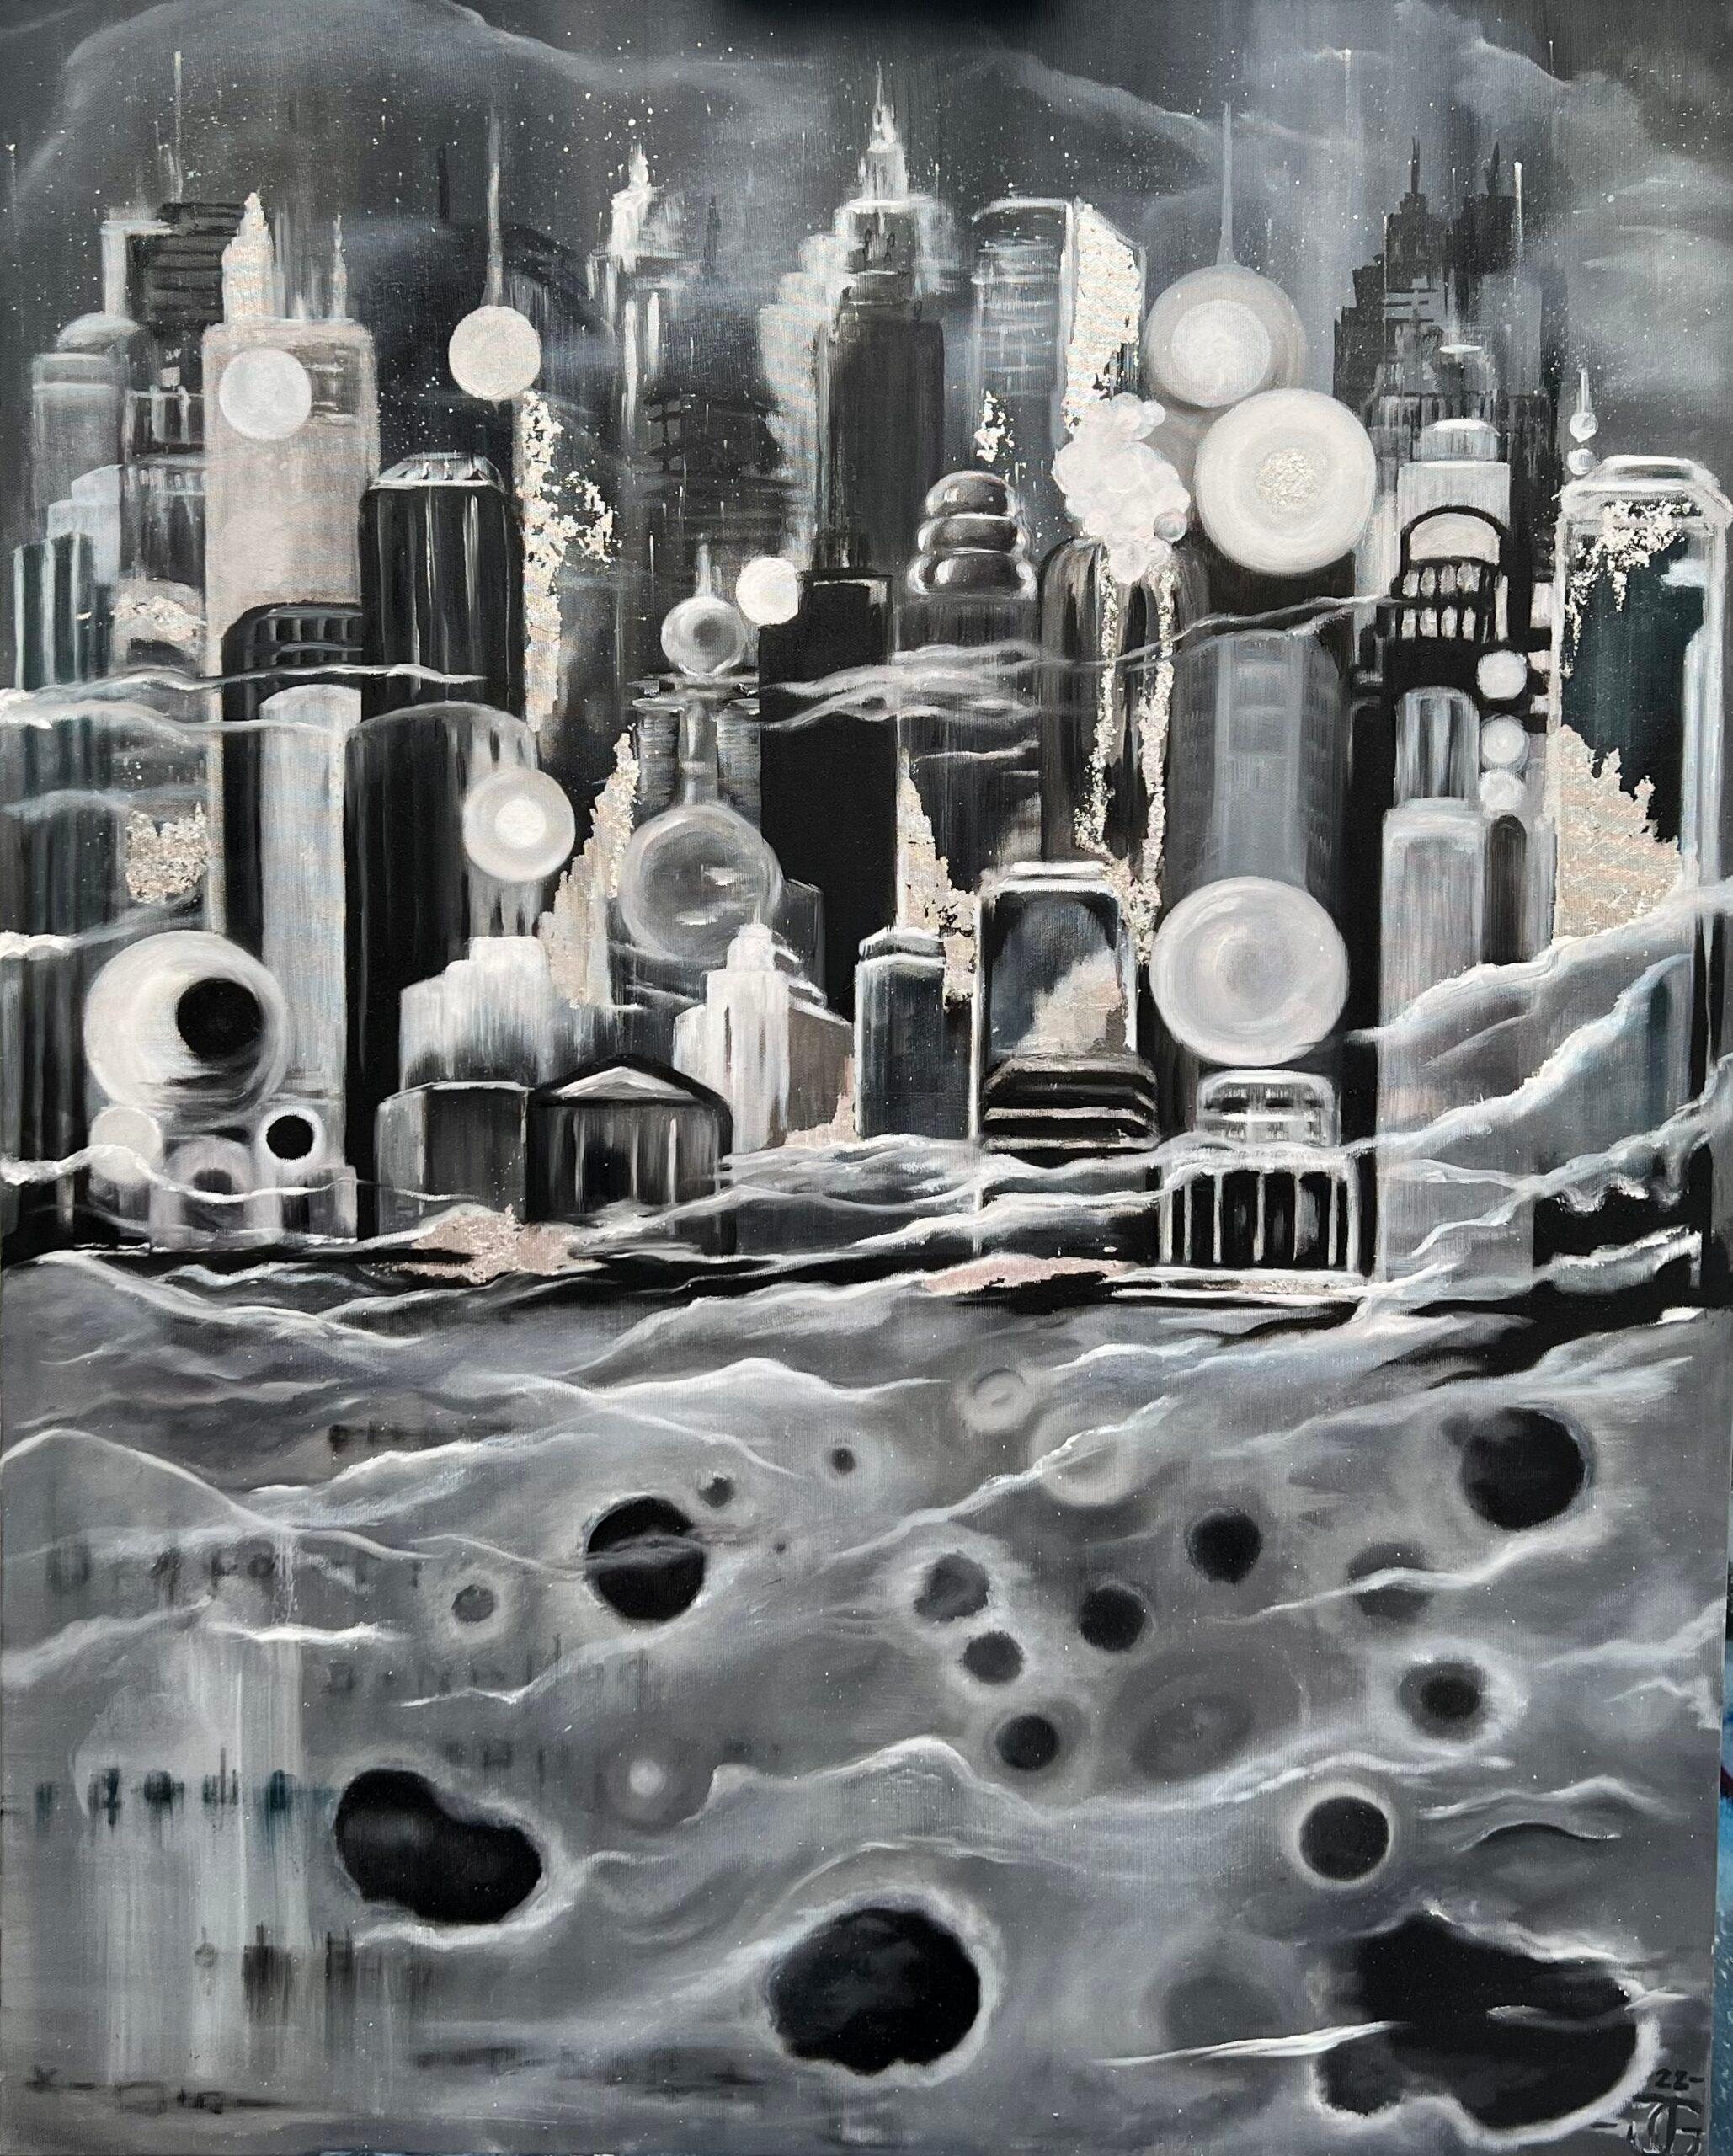 City on the Moon - Painting by Joanna Guzowska